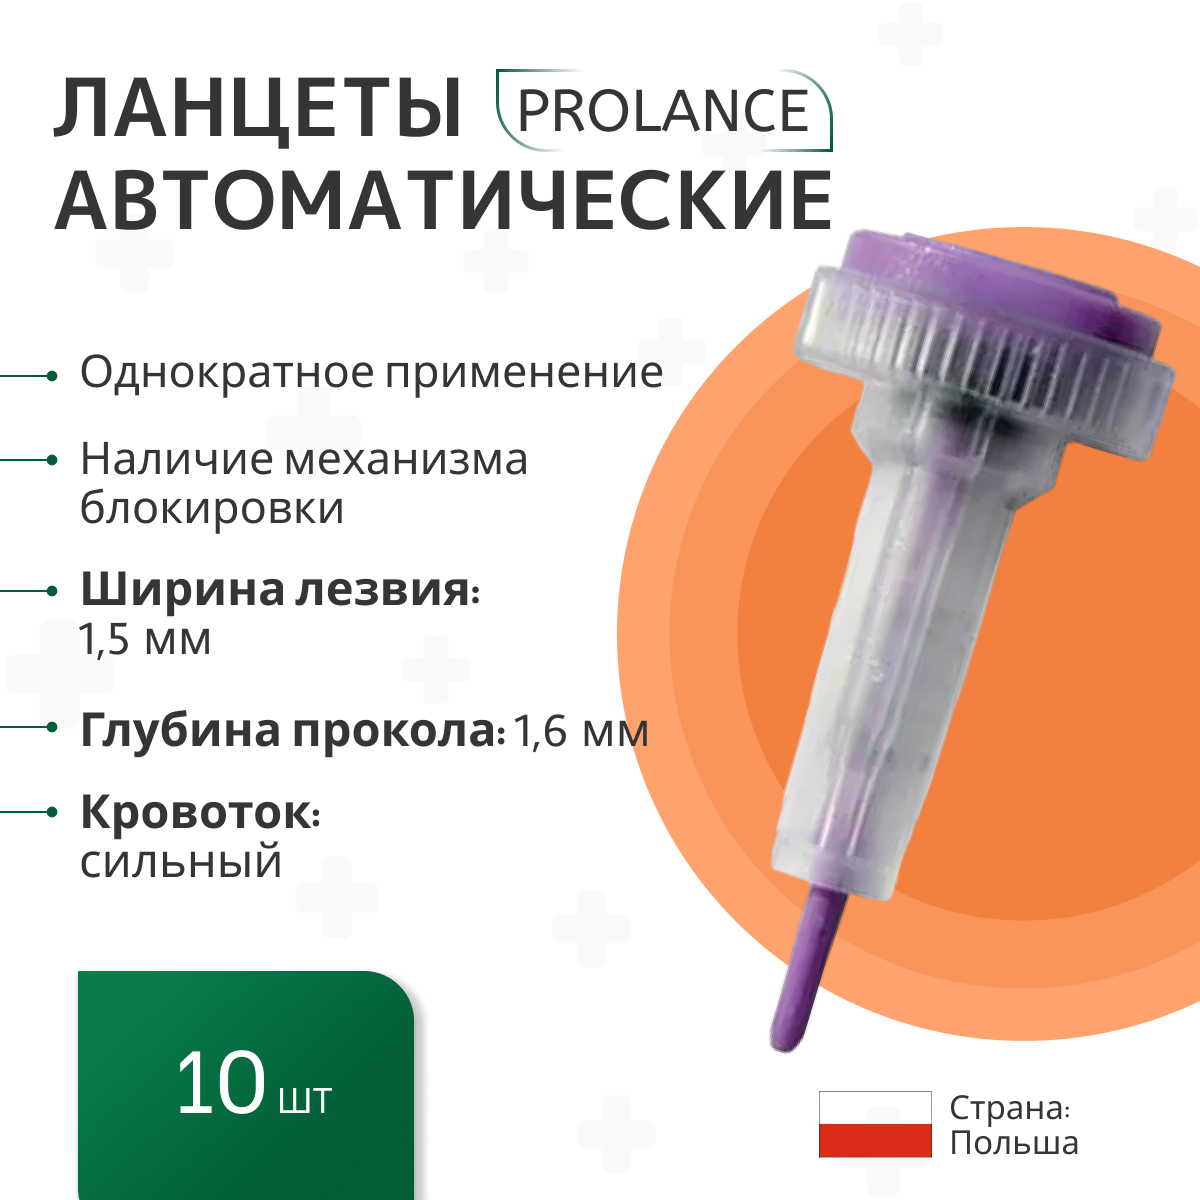 Ланцеты Prolance Max Flow для капиллярного забора крови 10 шт, глубина прокола 1,6 мм, фиолетовые